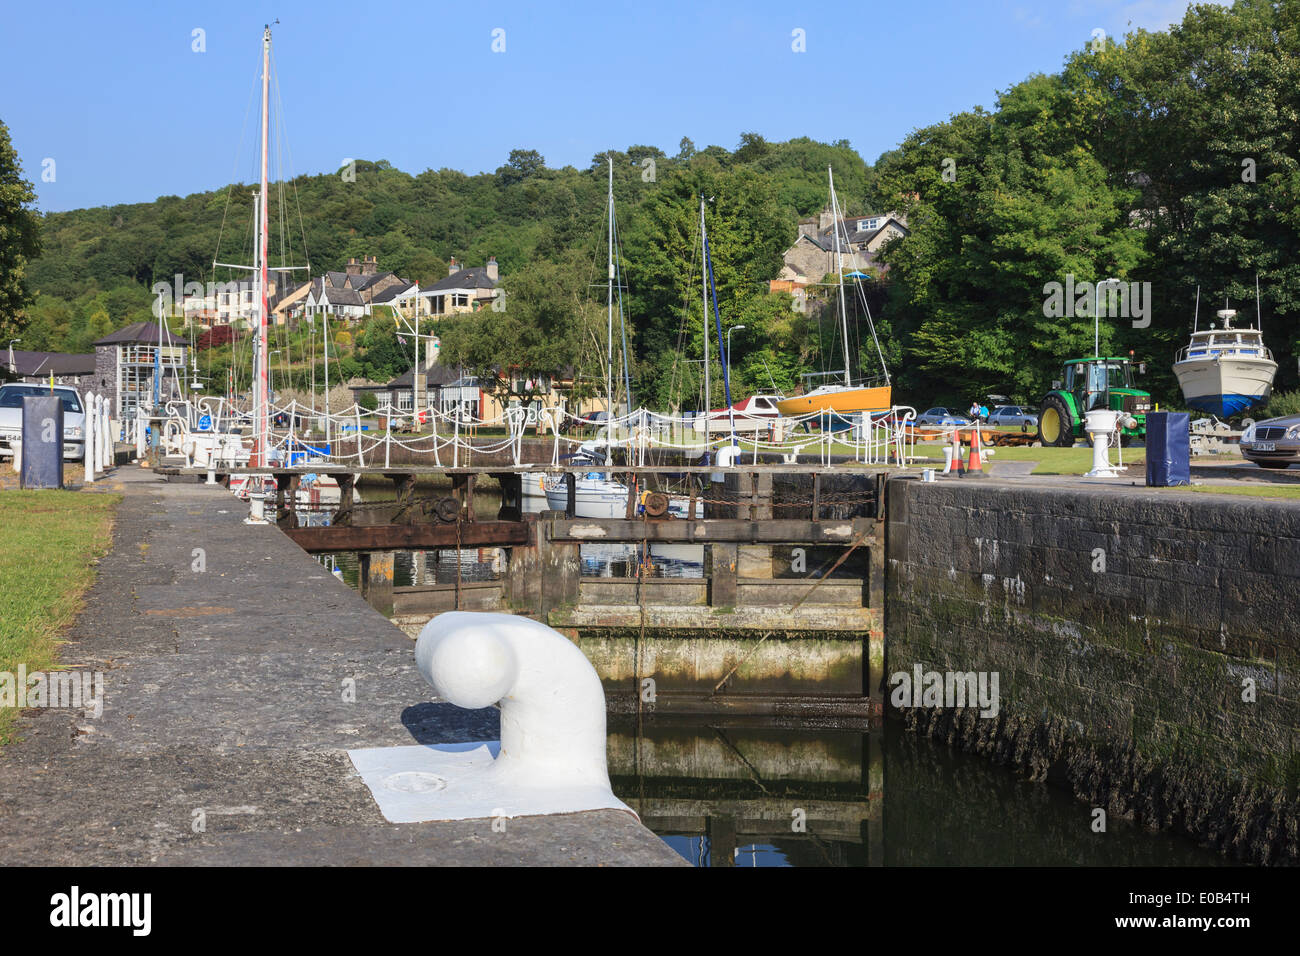 Festmacher Poller am Kai und Schleusen am Eingang zum yacht-Hafen mit Booten vertäut. Y Felinheli Gwynedd North Wales UK Großbritannien Stockfoto